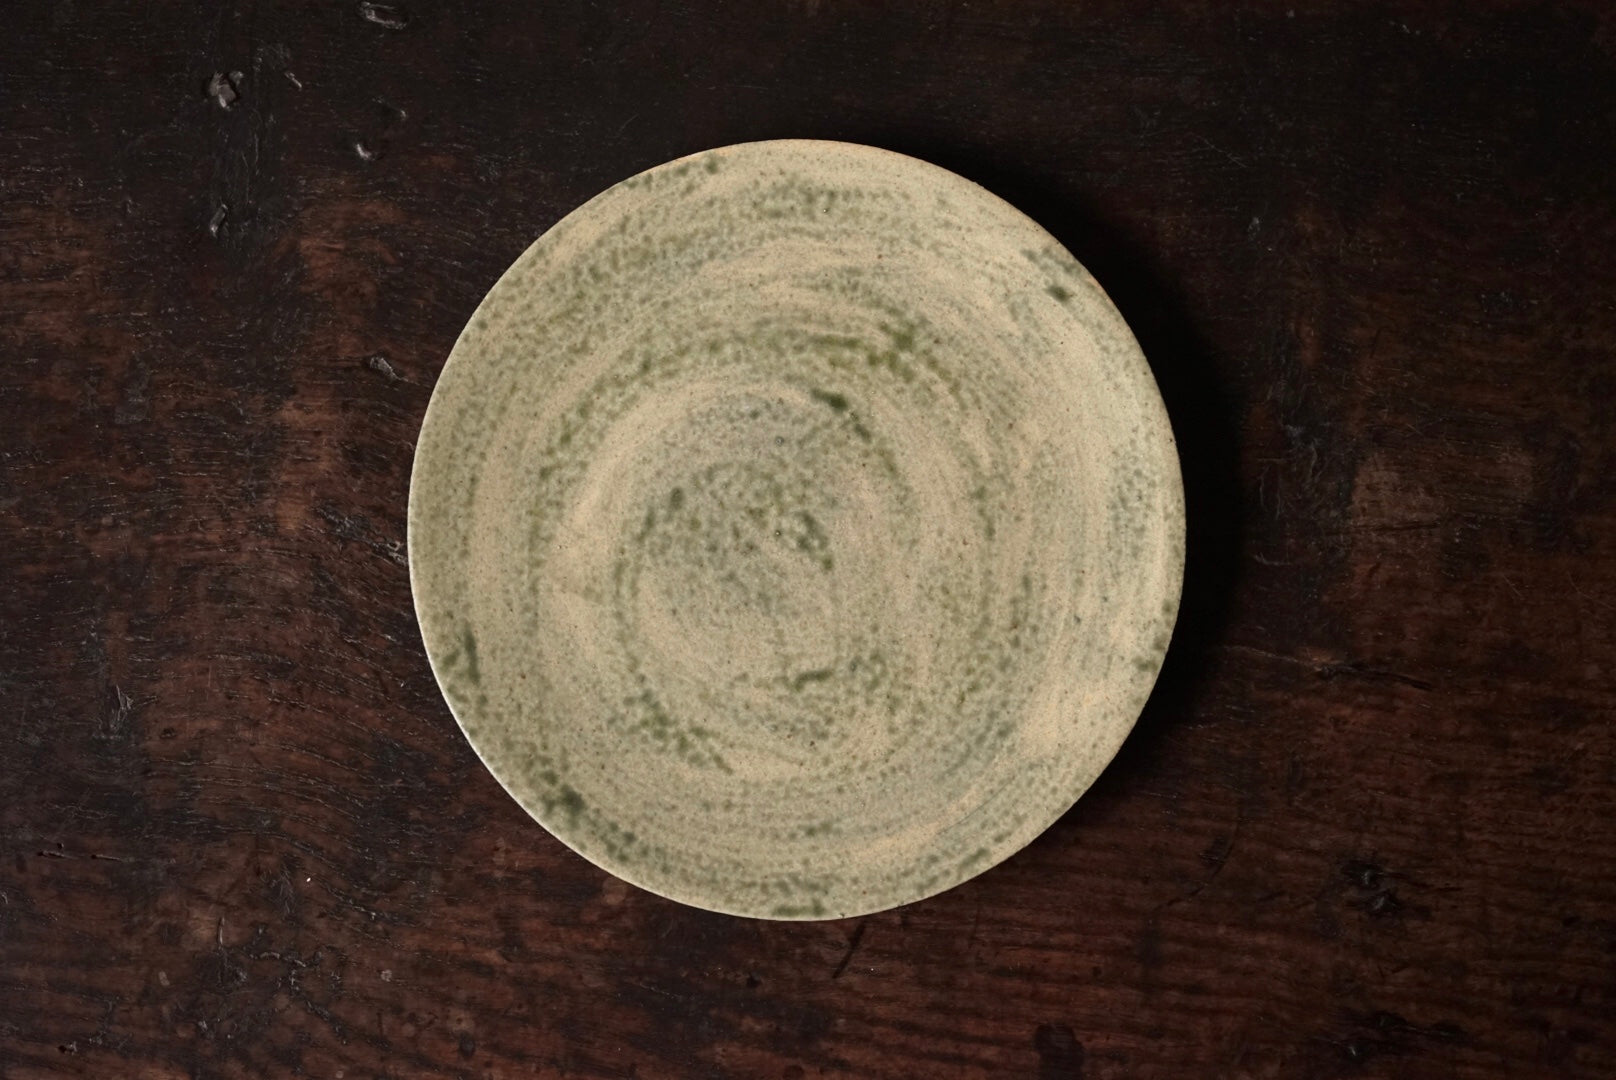 緑釉八寸皿 / 谷穹